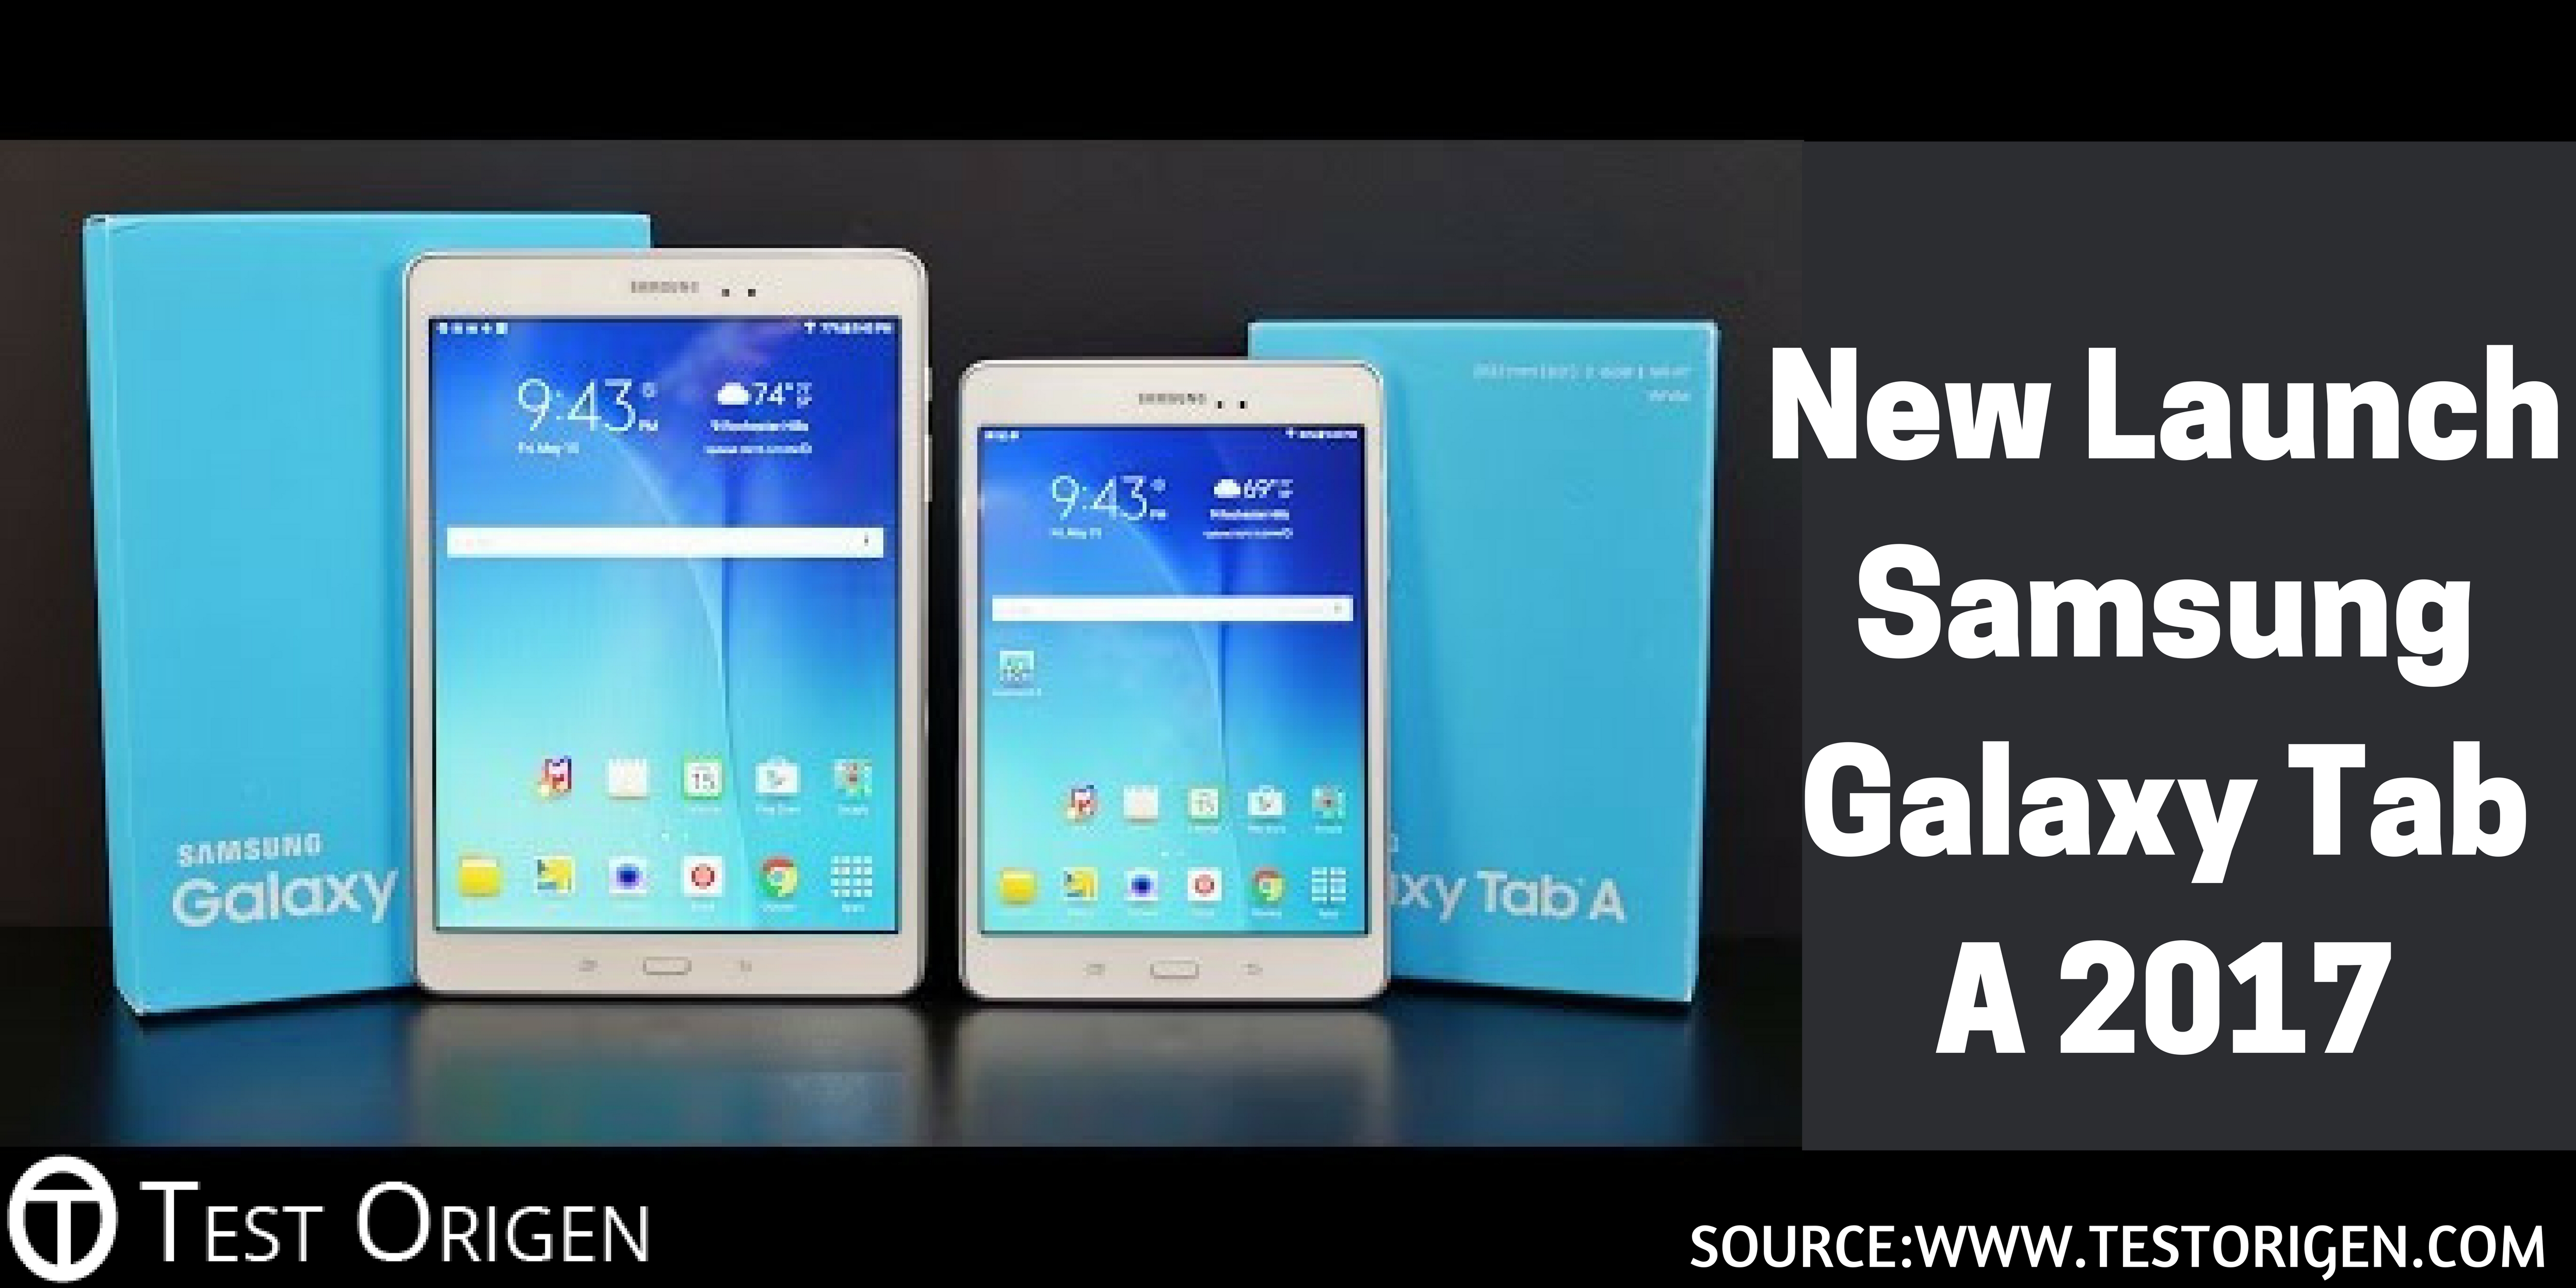 New Launch Samsung Galaxy Tab A 2017